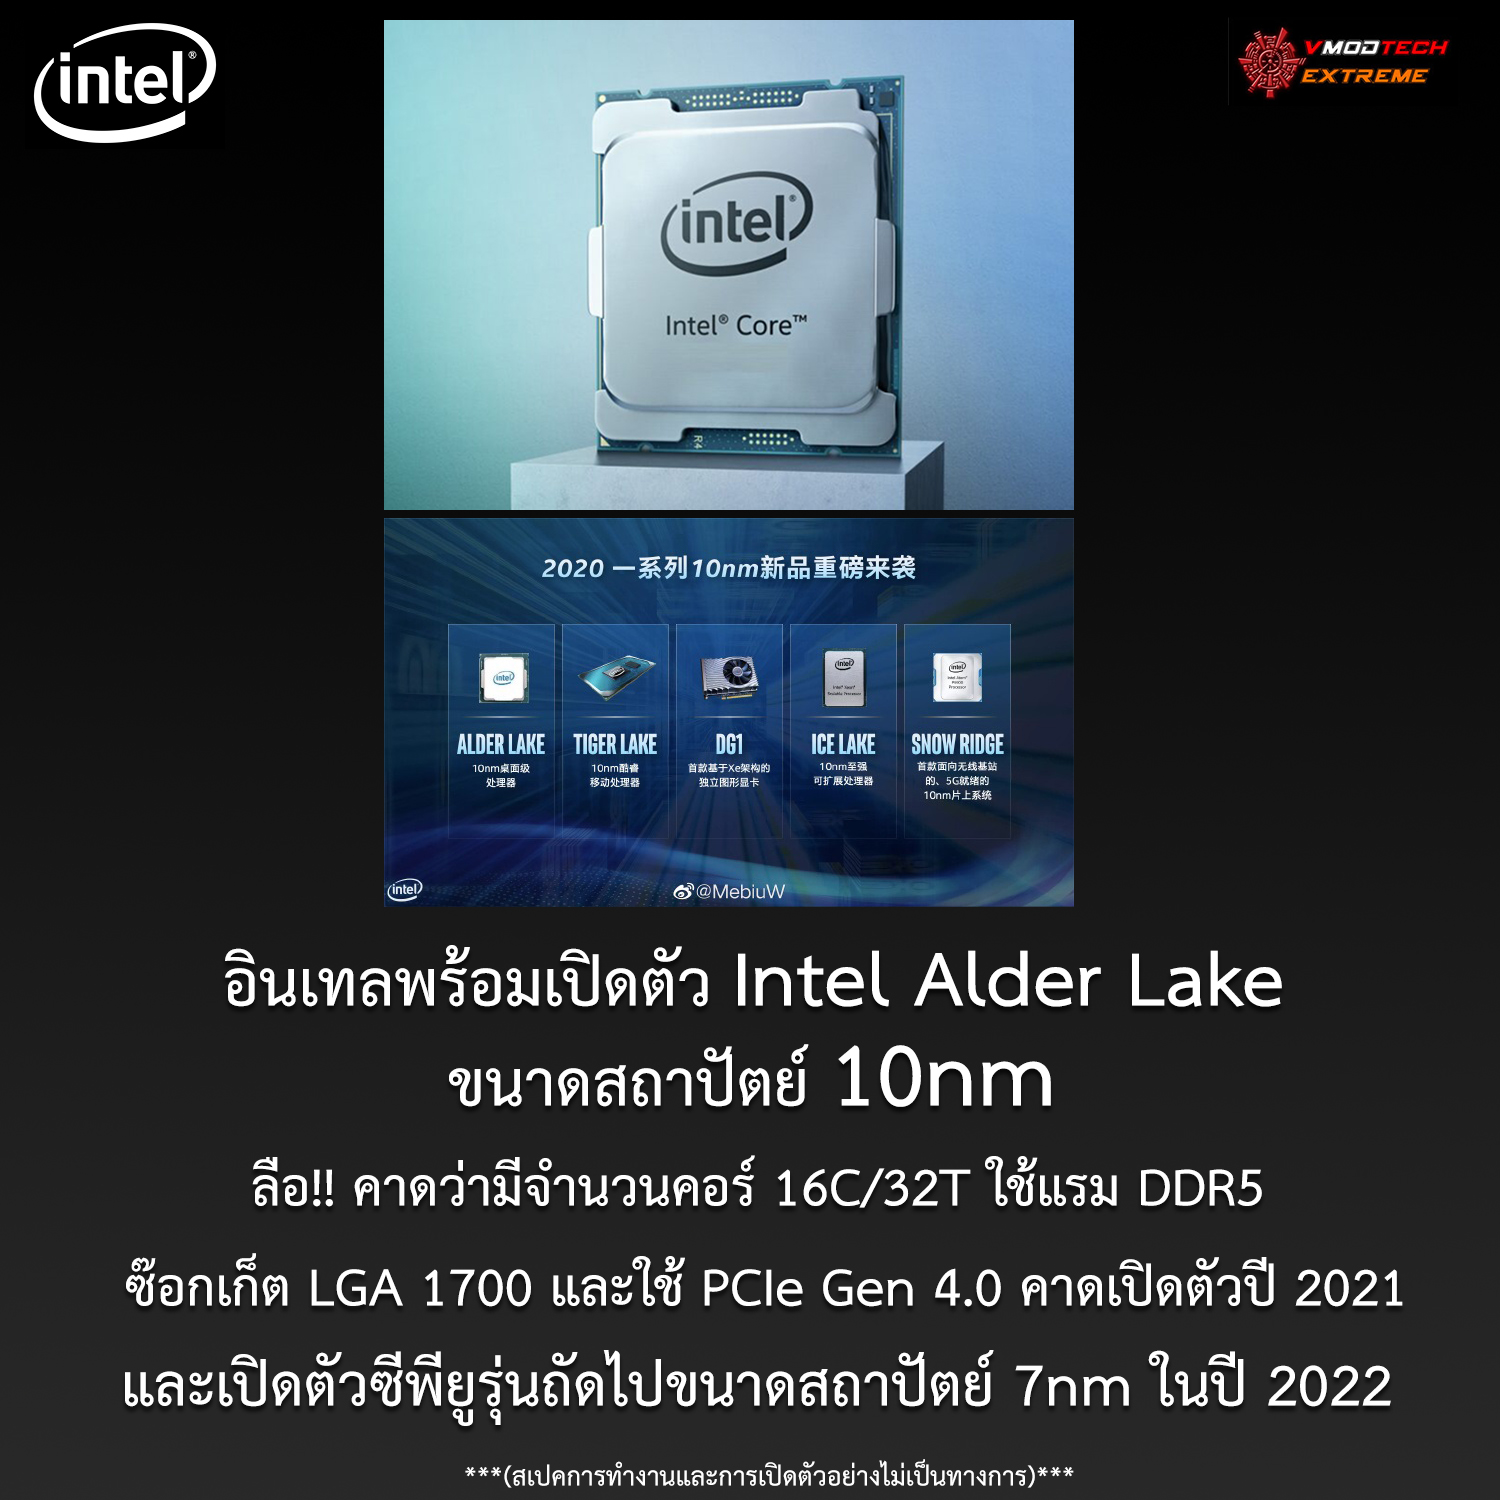 อินเทลพร้อมเปิดตัว Intel Alder Lake ขนาดสถาปัตย์ 10nm ในปี 2021 และเปิดตัวซีพียูรุ่นถัดไปขนาดสถาปัตย์ 7nm ในปี 2022 